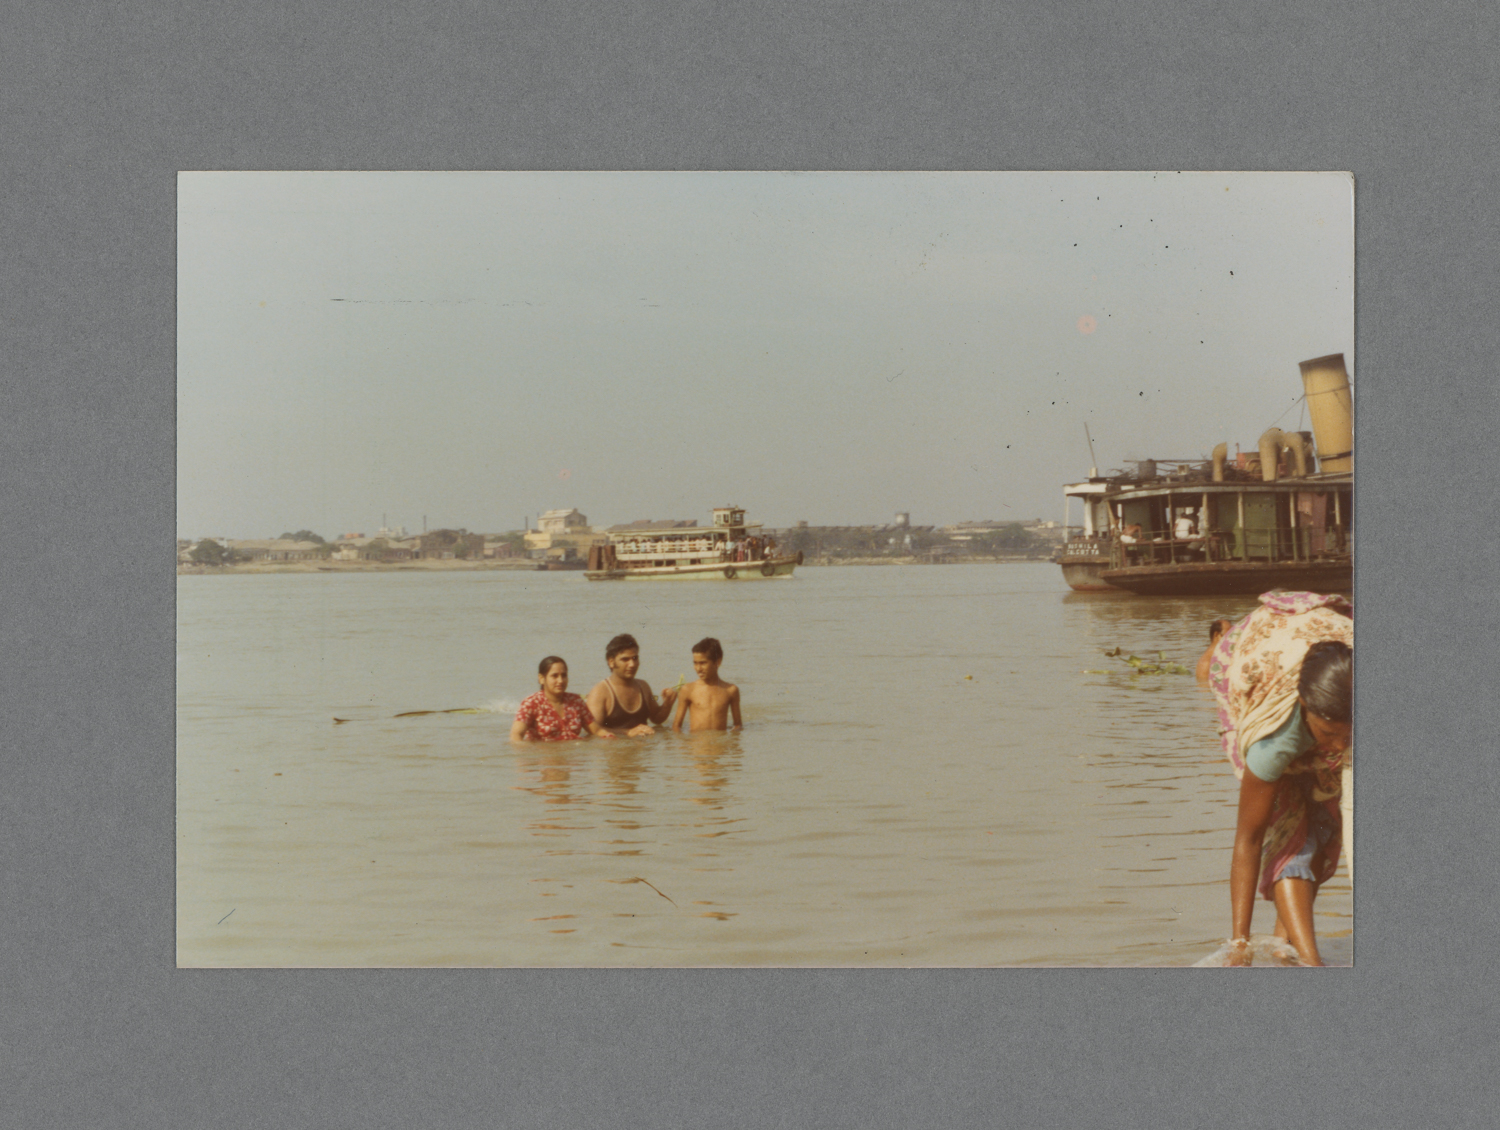 Ganga River, Calcutta, India c.1974